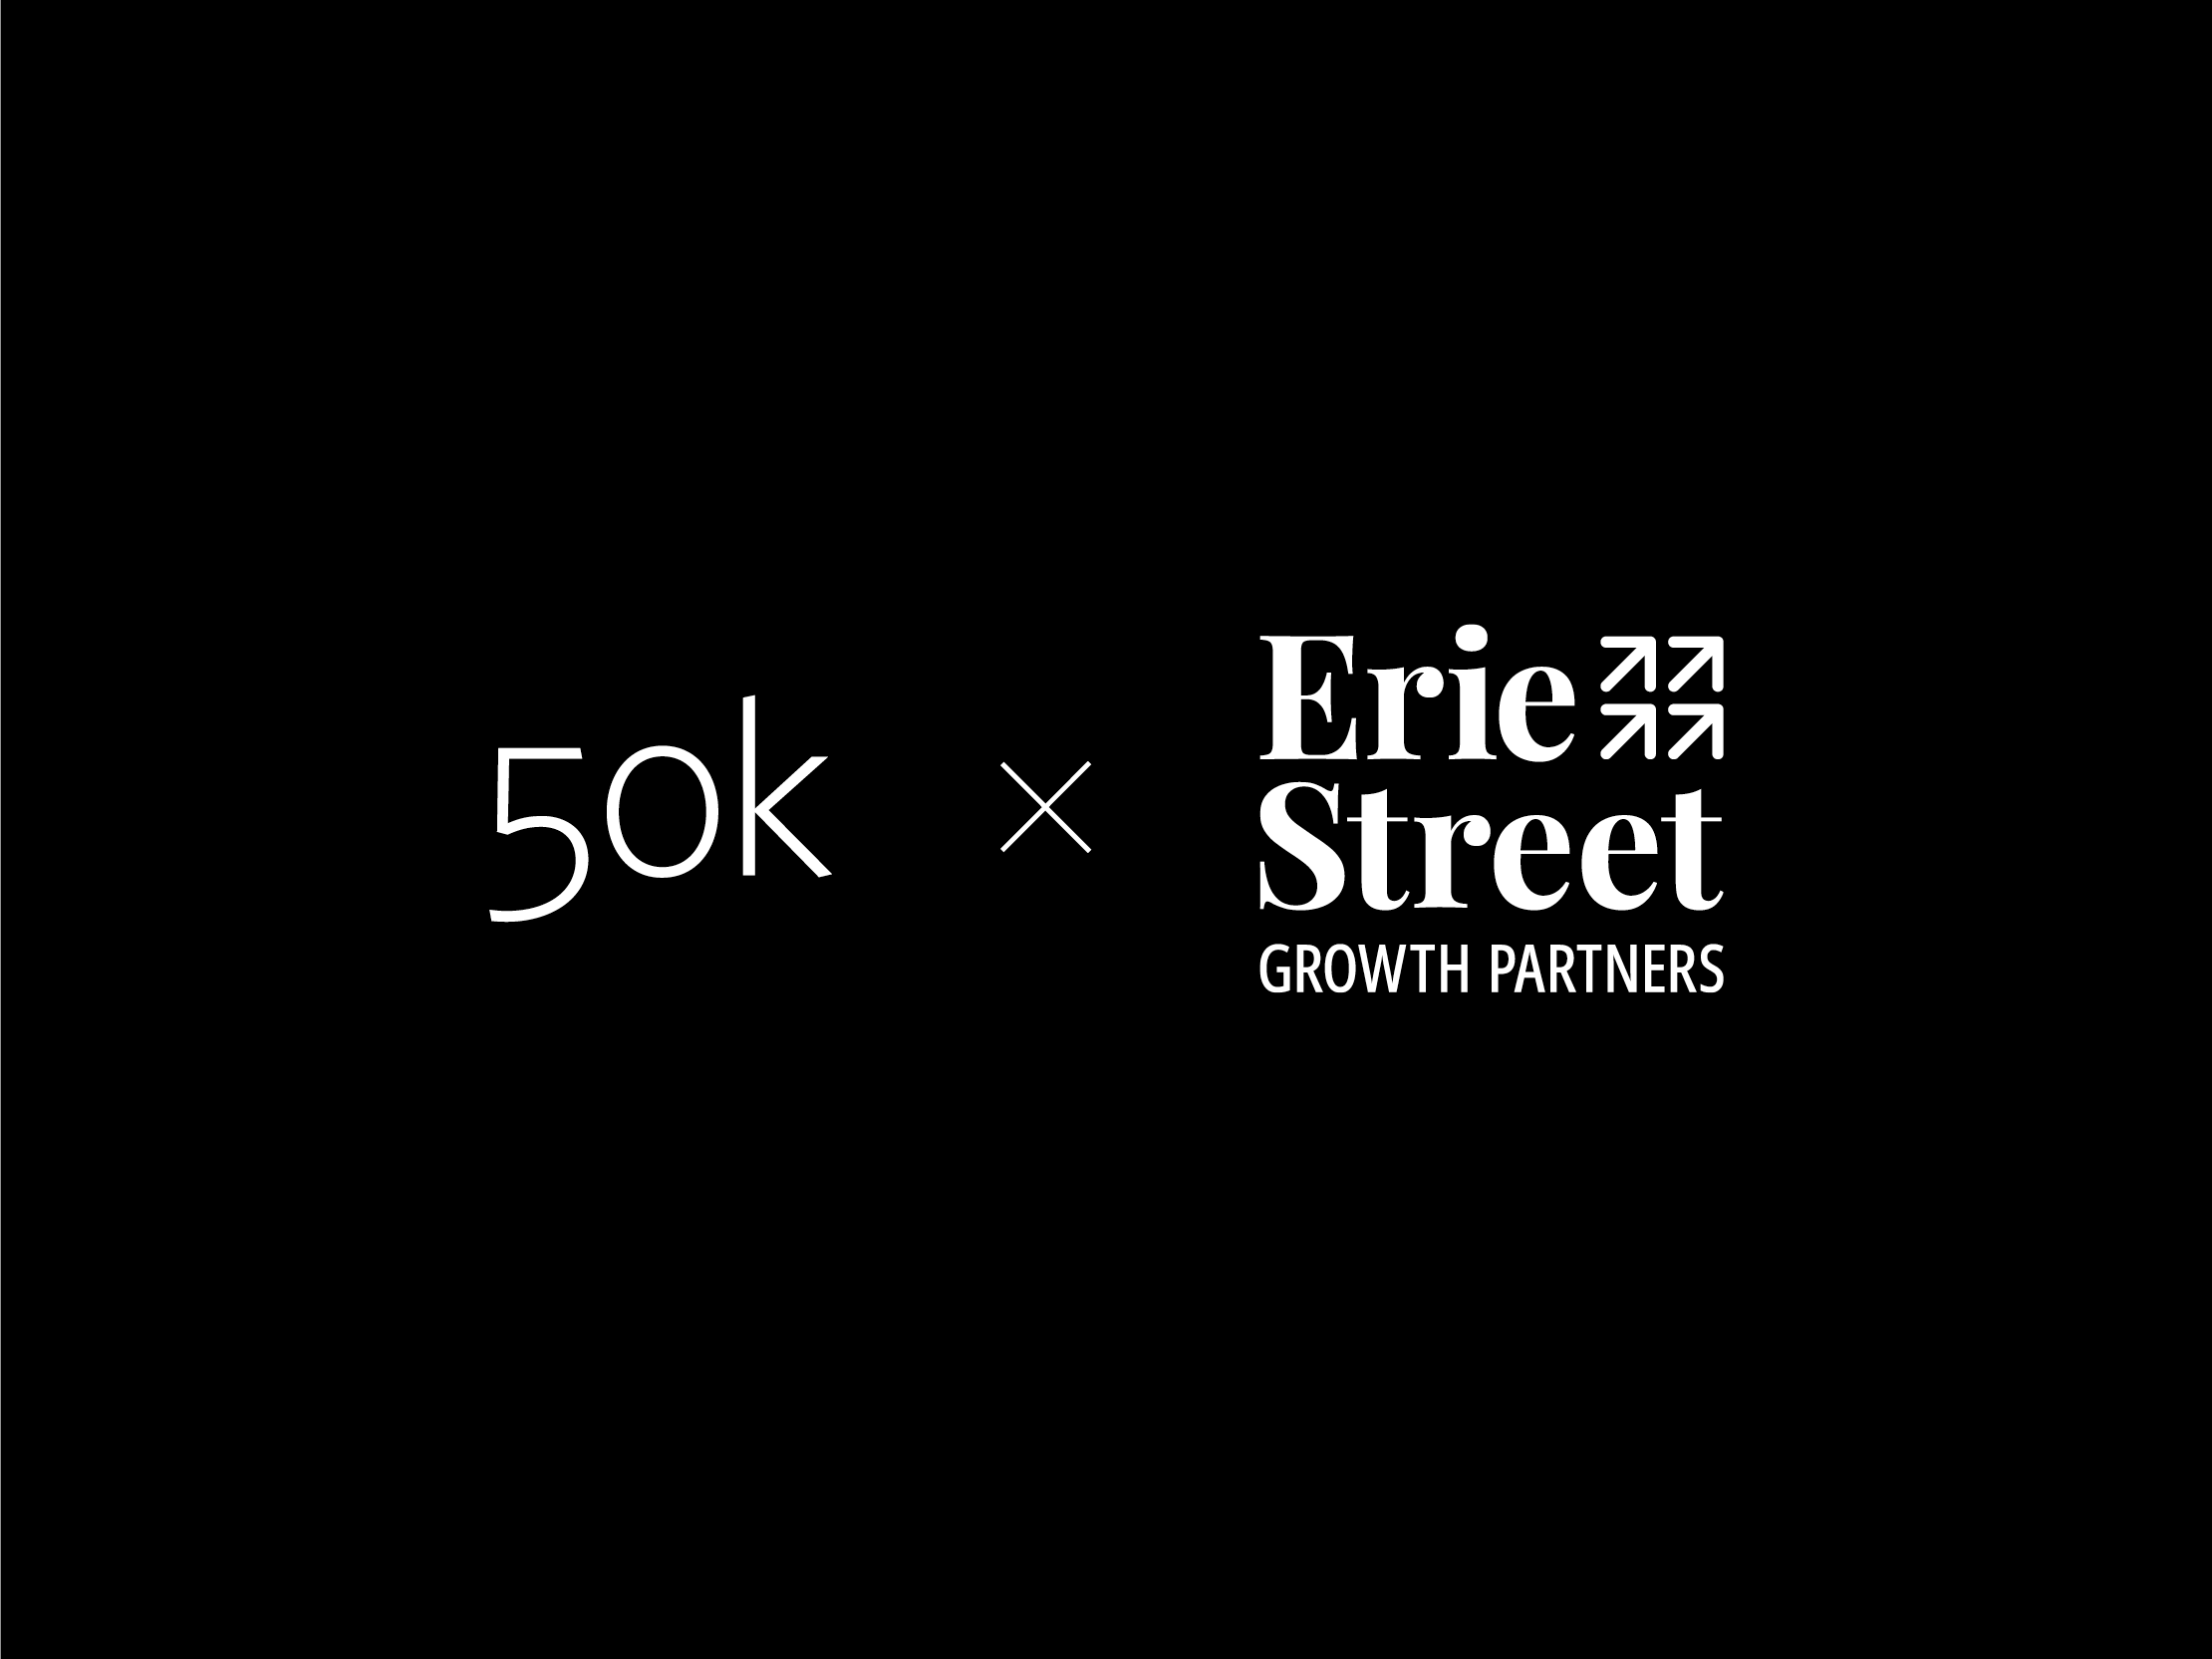 50k-erie-street-logo